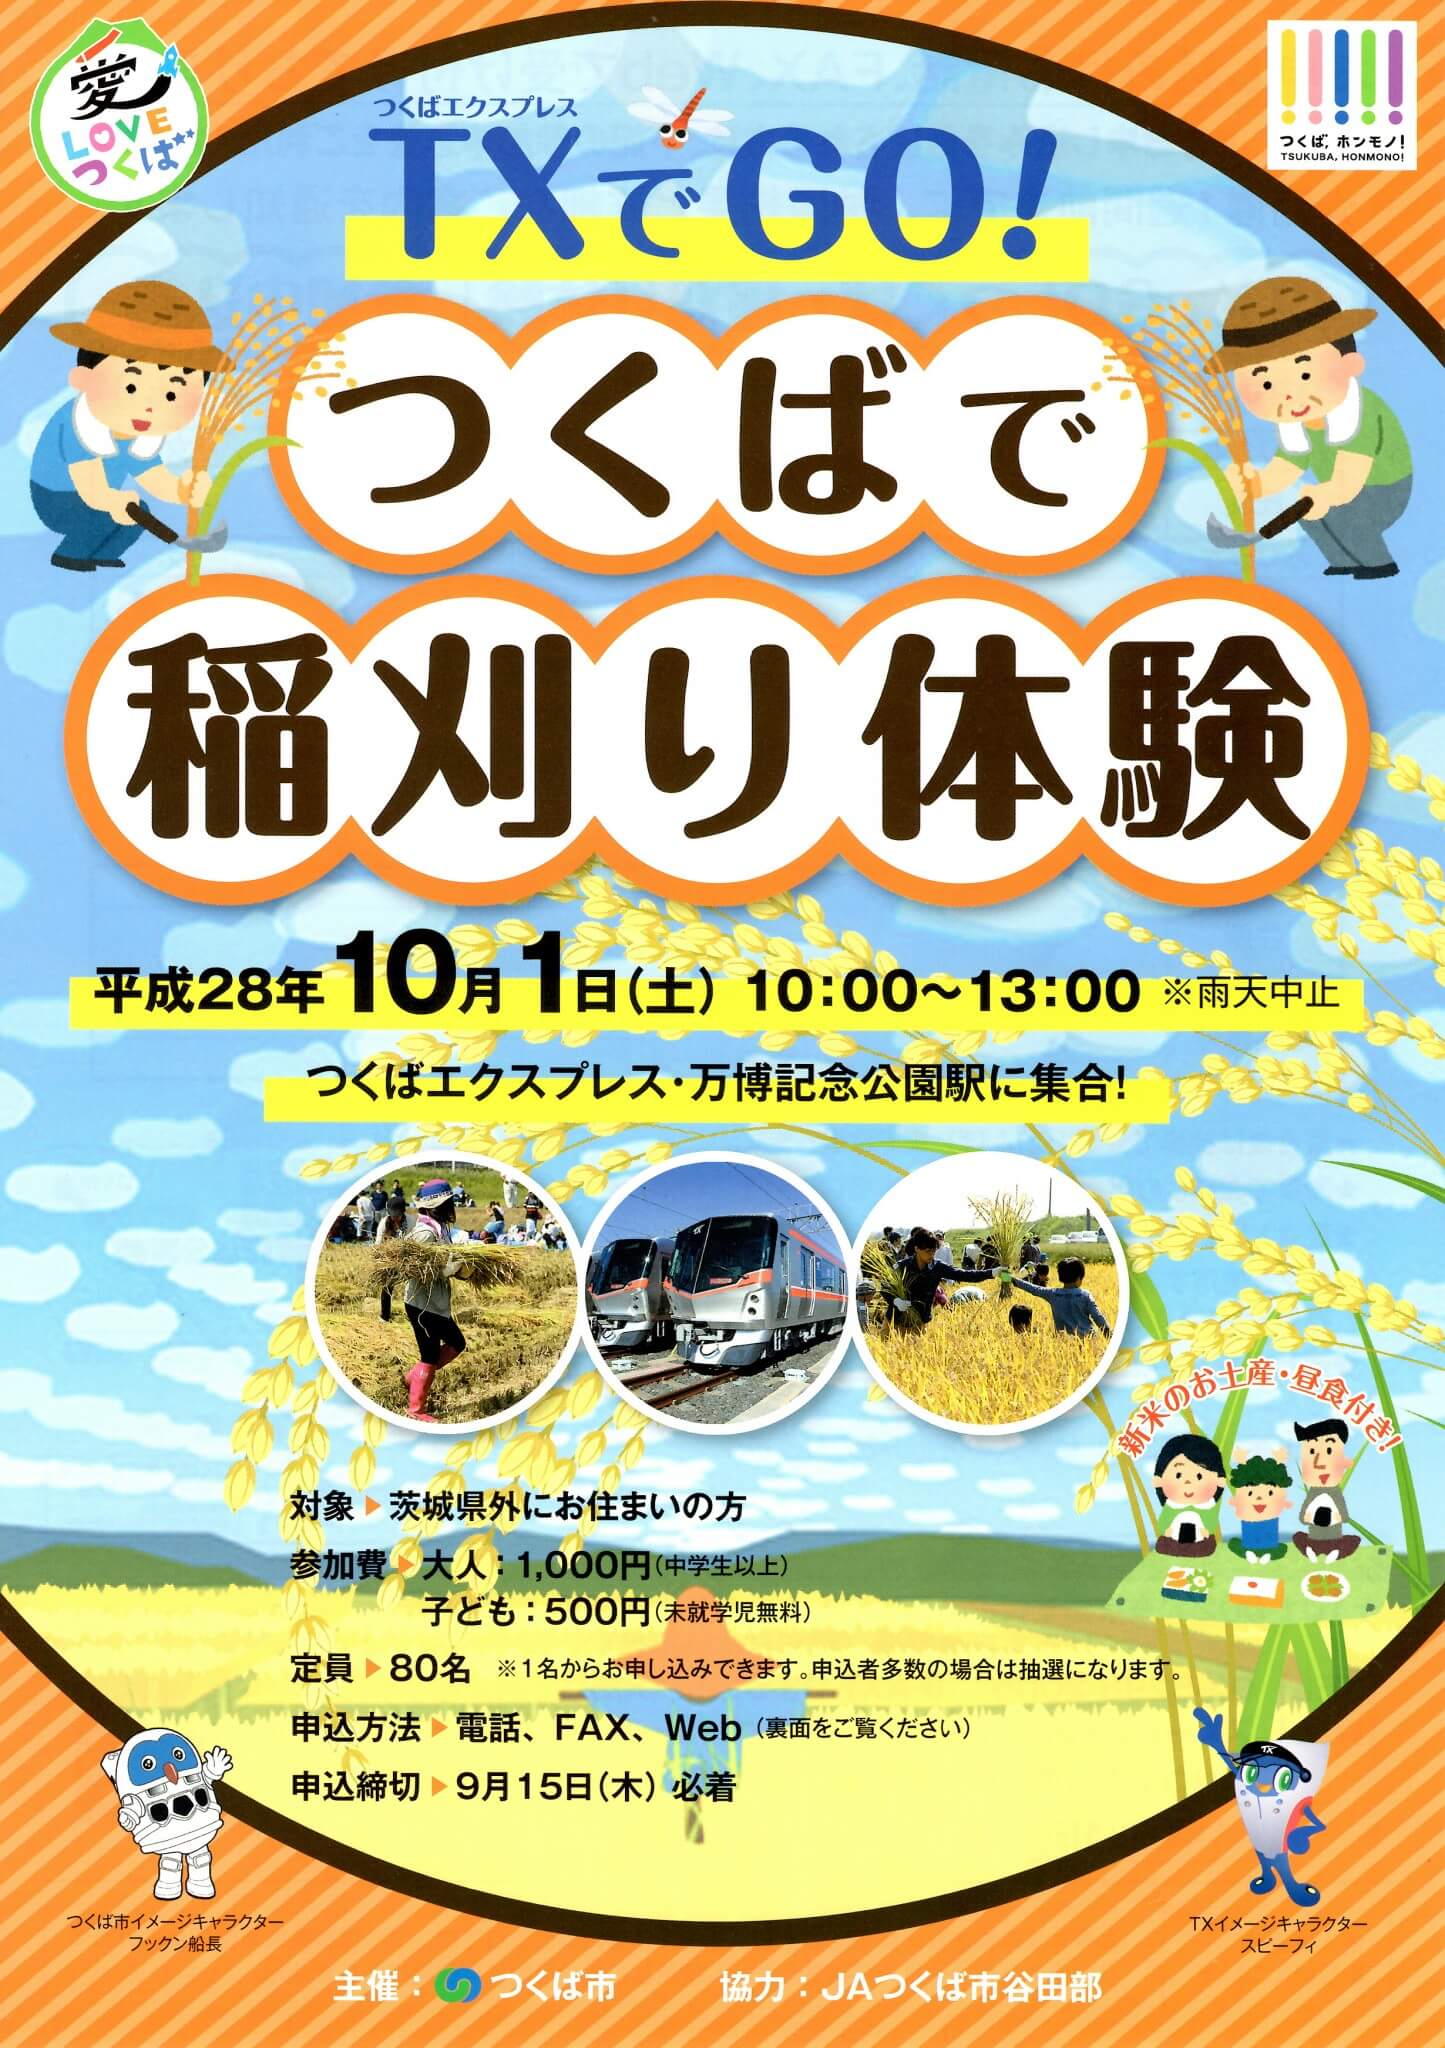 10月1日(土)に万博記念公園駅付近で稲刈り体験ができます！